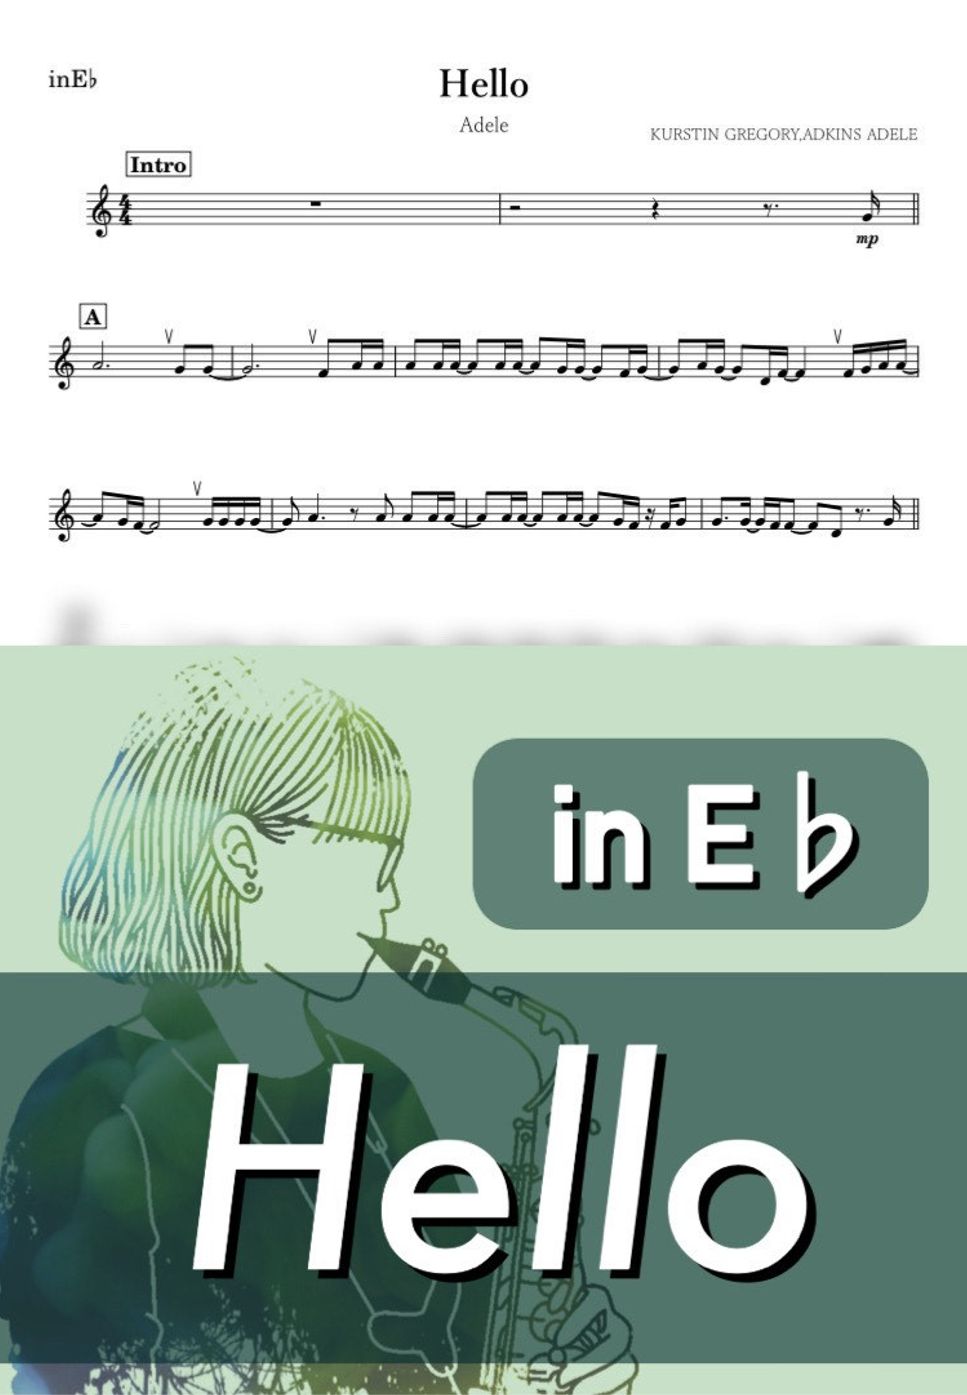 Adele - Hello (E♭) by kanamusic